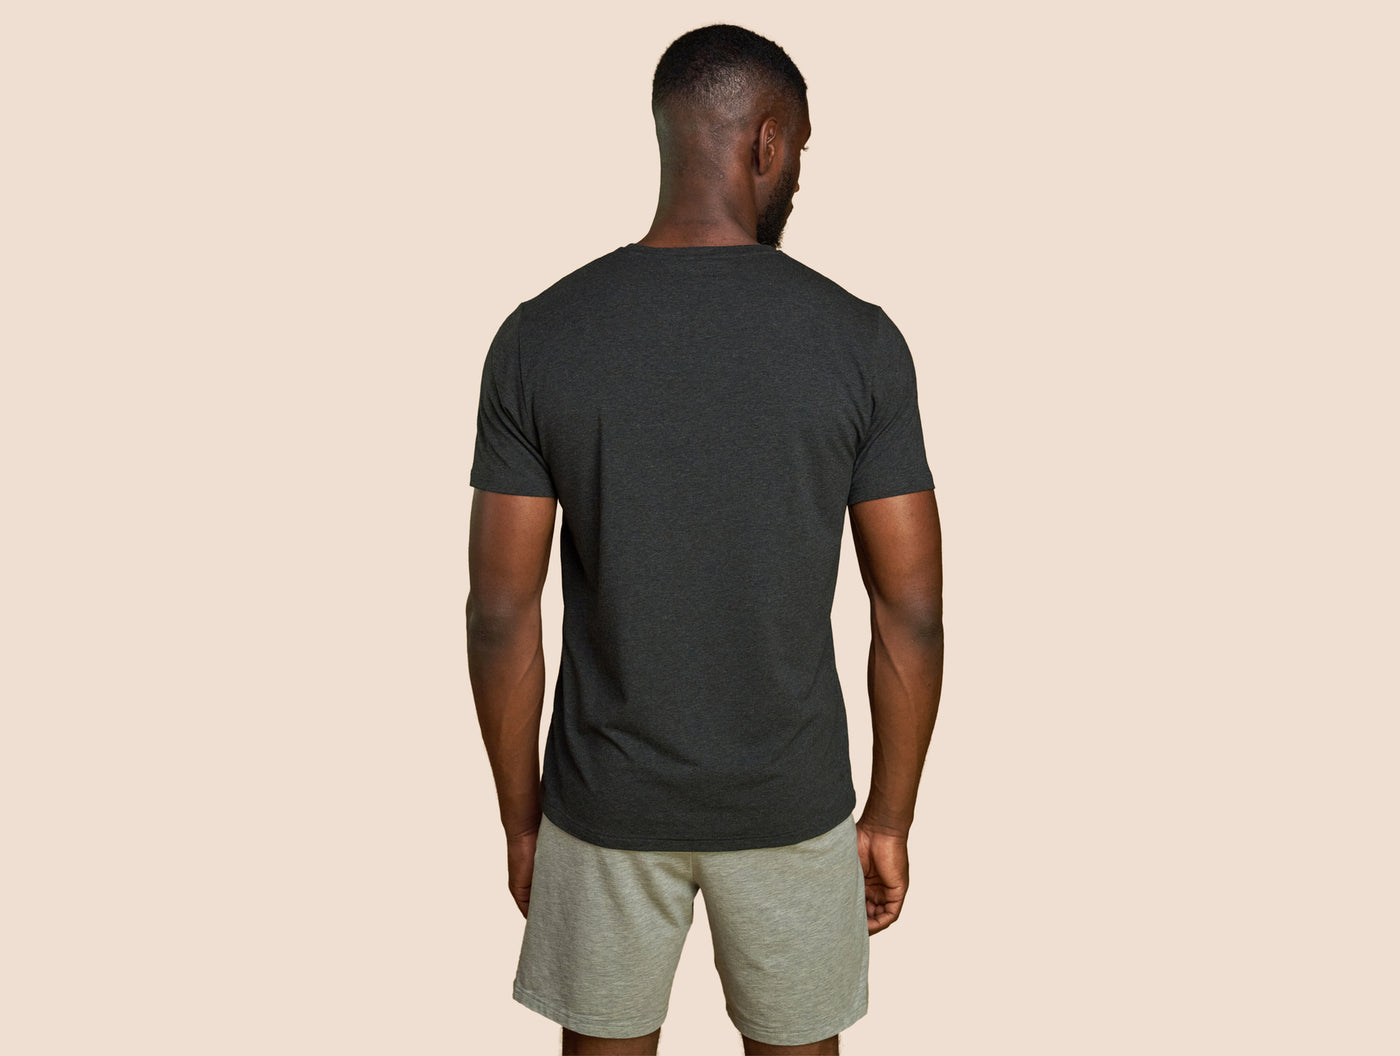 Pétrone T-shirt manches courtes coton pima micromodal gris anthracite homme#couleur_gris-anthracite